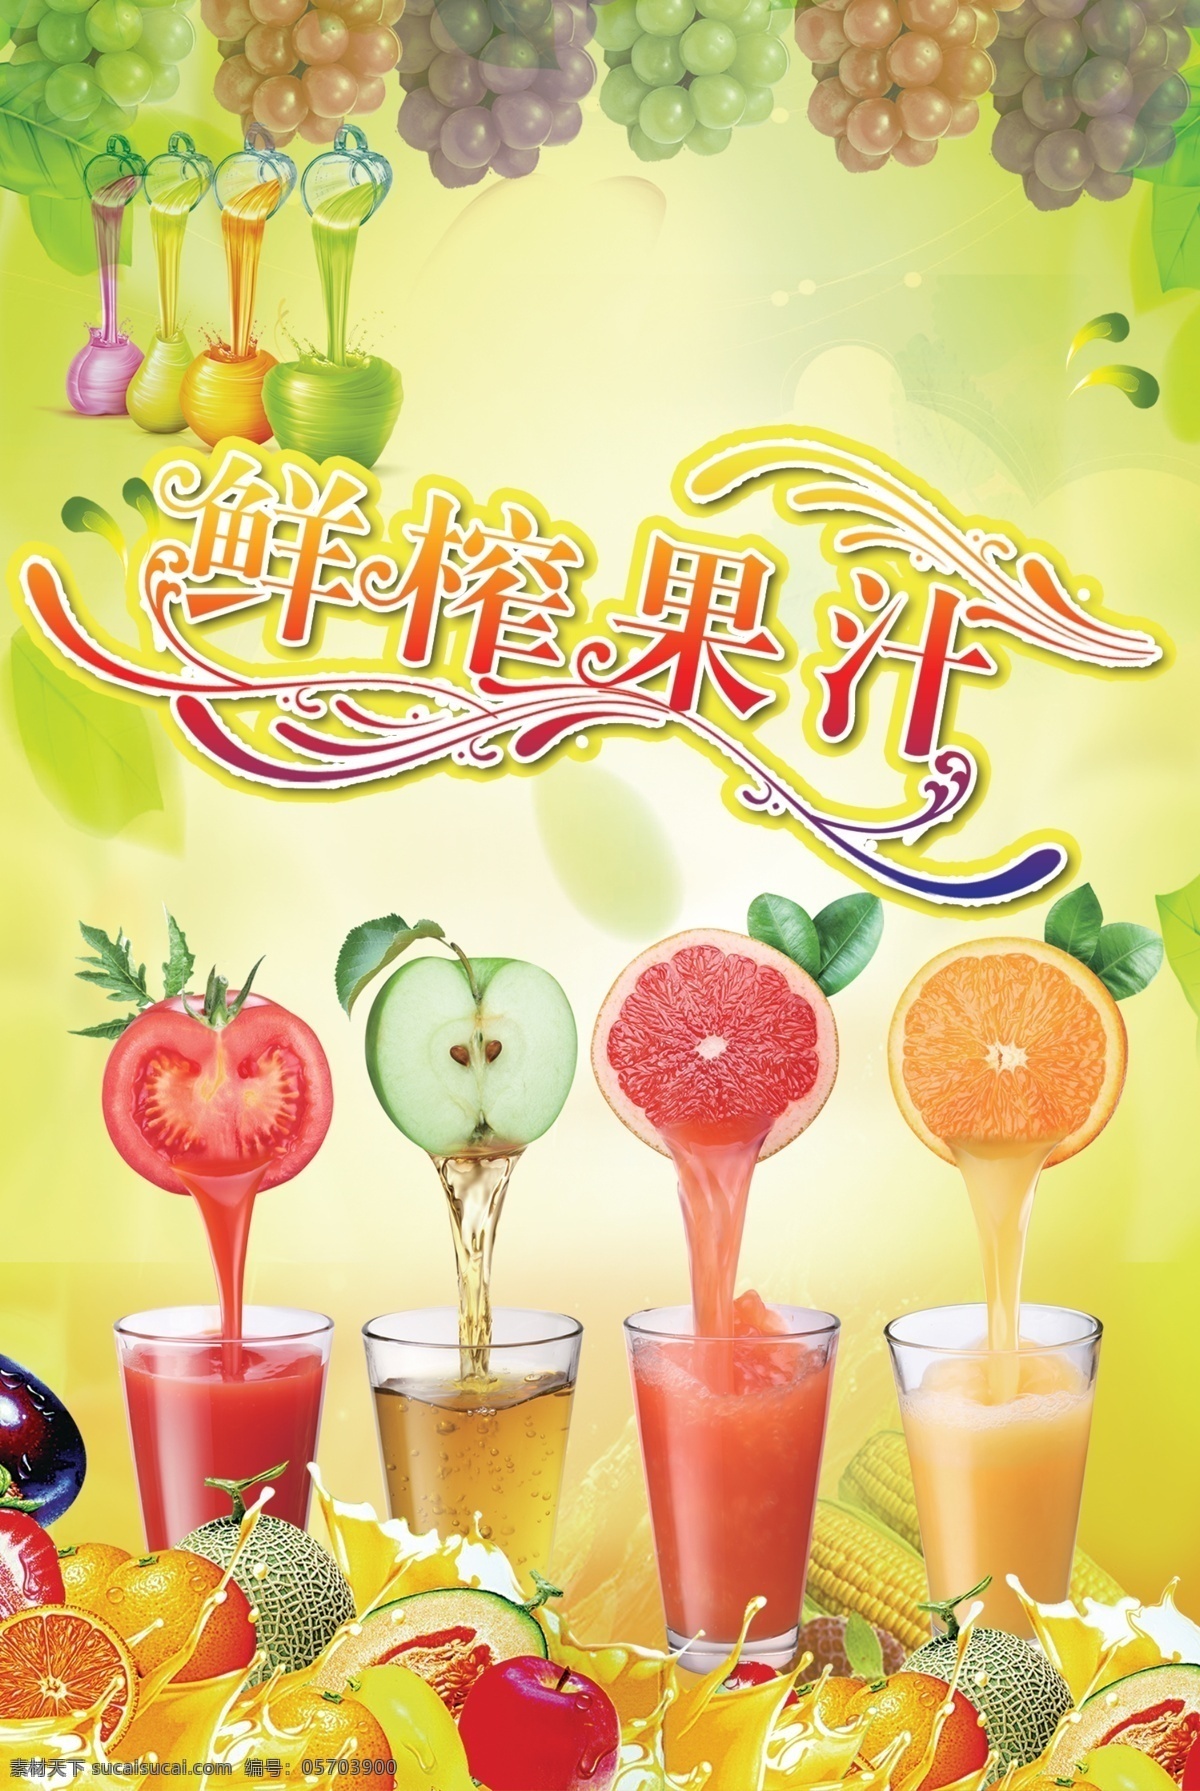 鲜榨 果汁 杯子 葡萄 水果 鲜榨果汁 淡绿色的底图 原创设计 原创海报